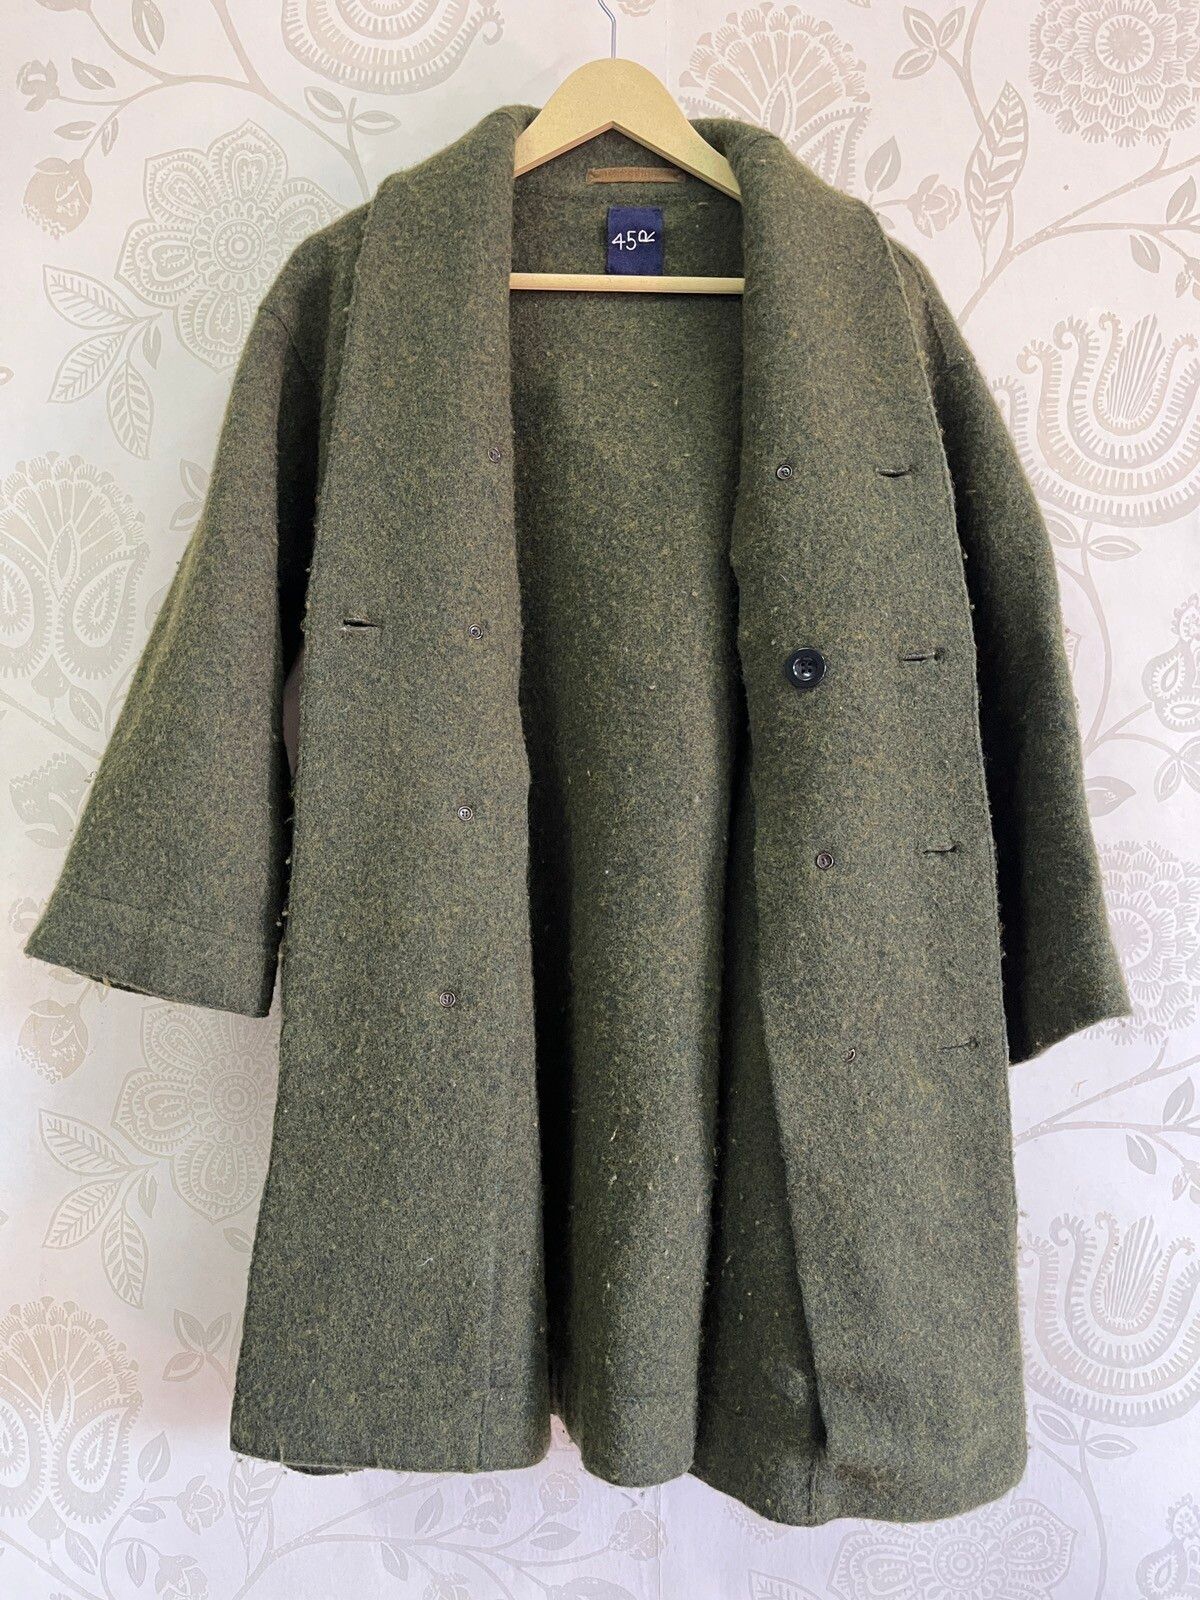 45RPM Wool Japan Designer Long Jacket - 3